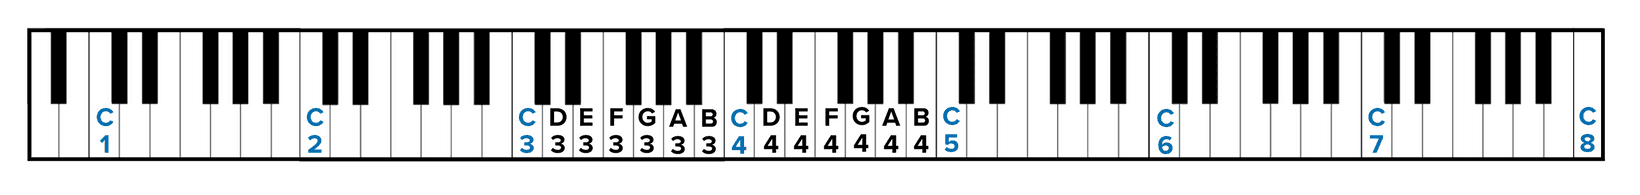 Xác định C4 trên đàn piano 88 phím để đọc nốt và đàn dễ dàng hơn